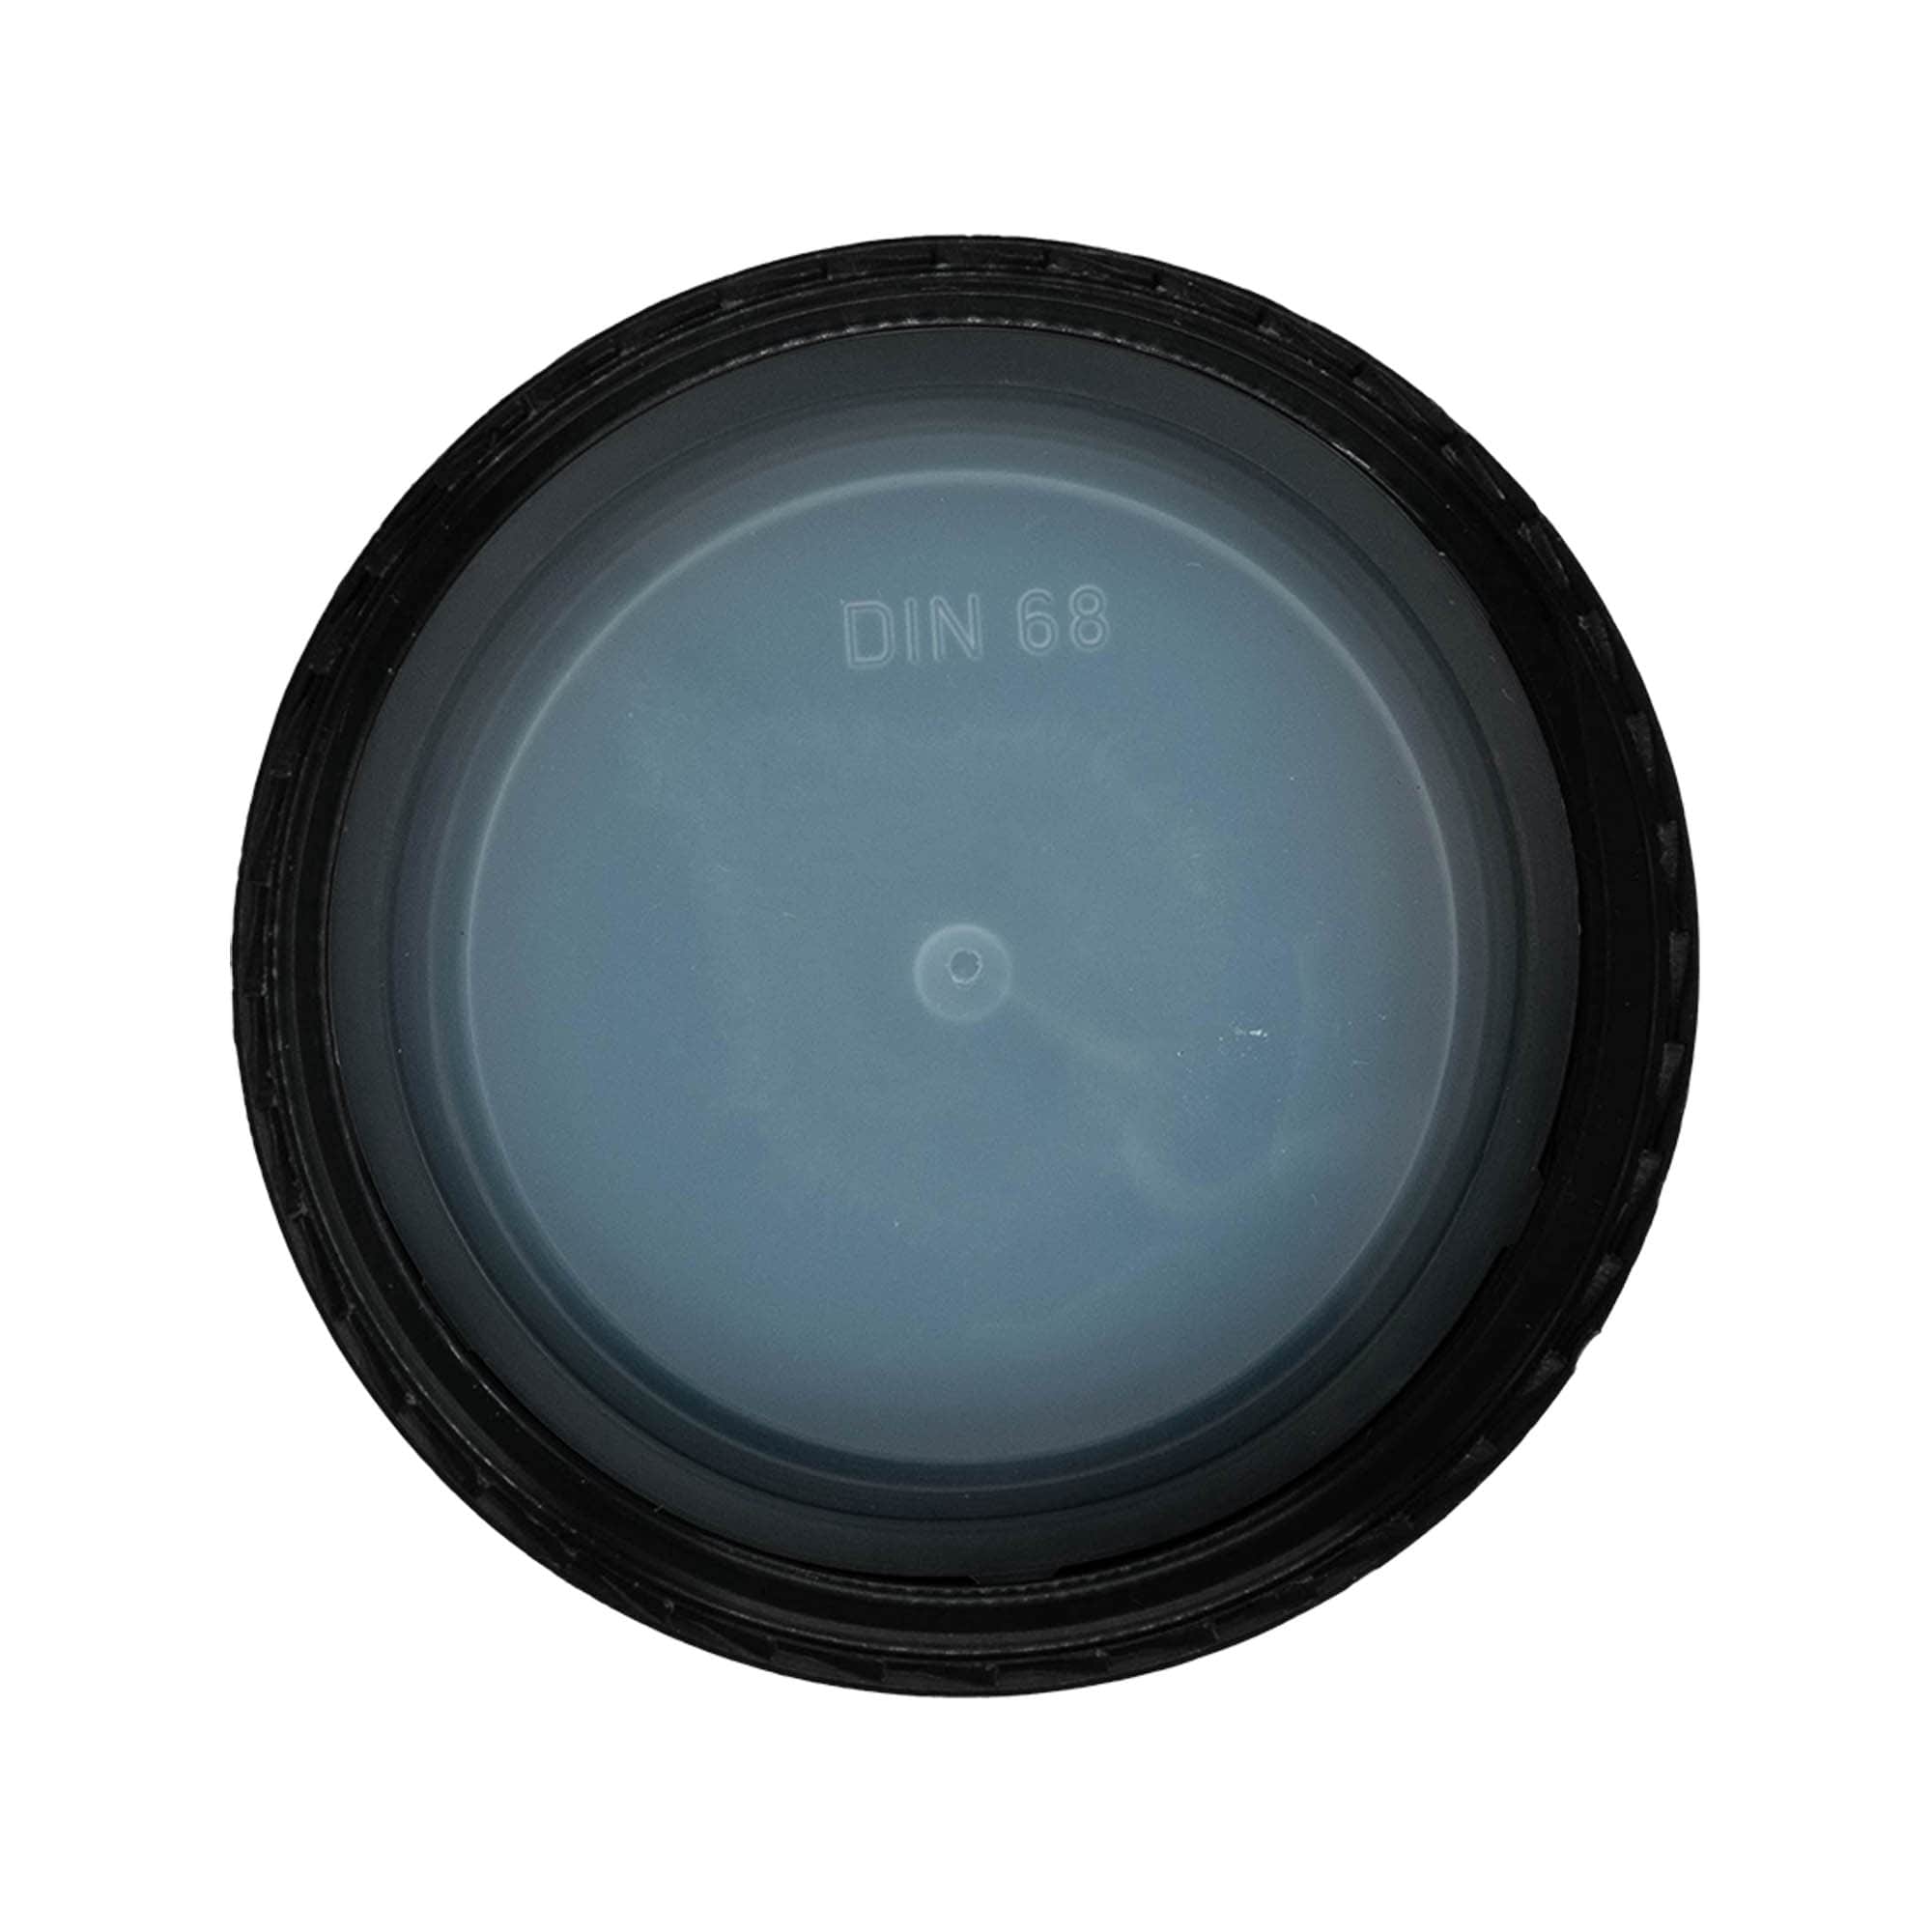 Šroubovací uzávěr, plast PP, černý, pro ústí: DIN 68